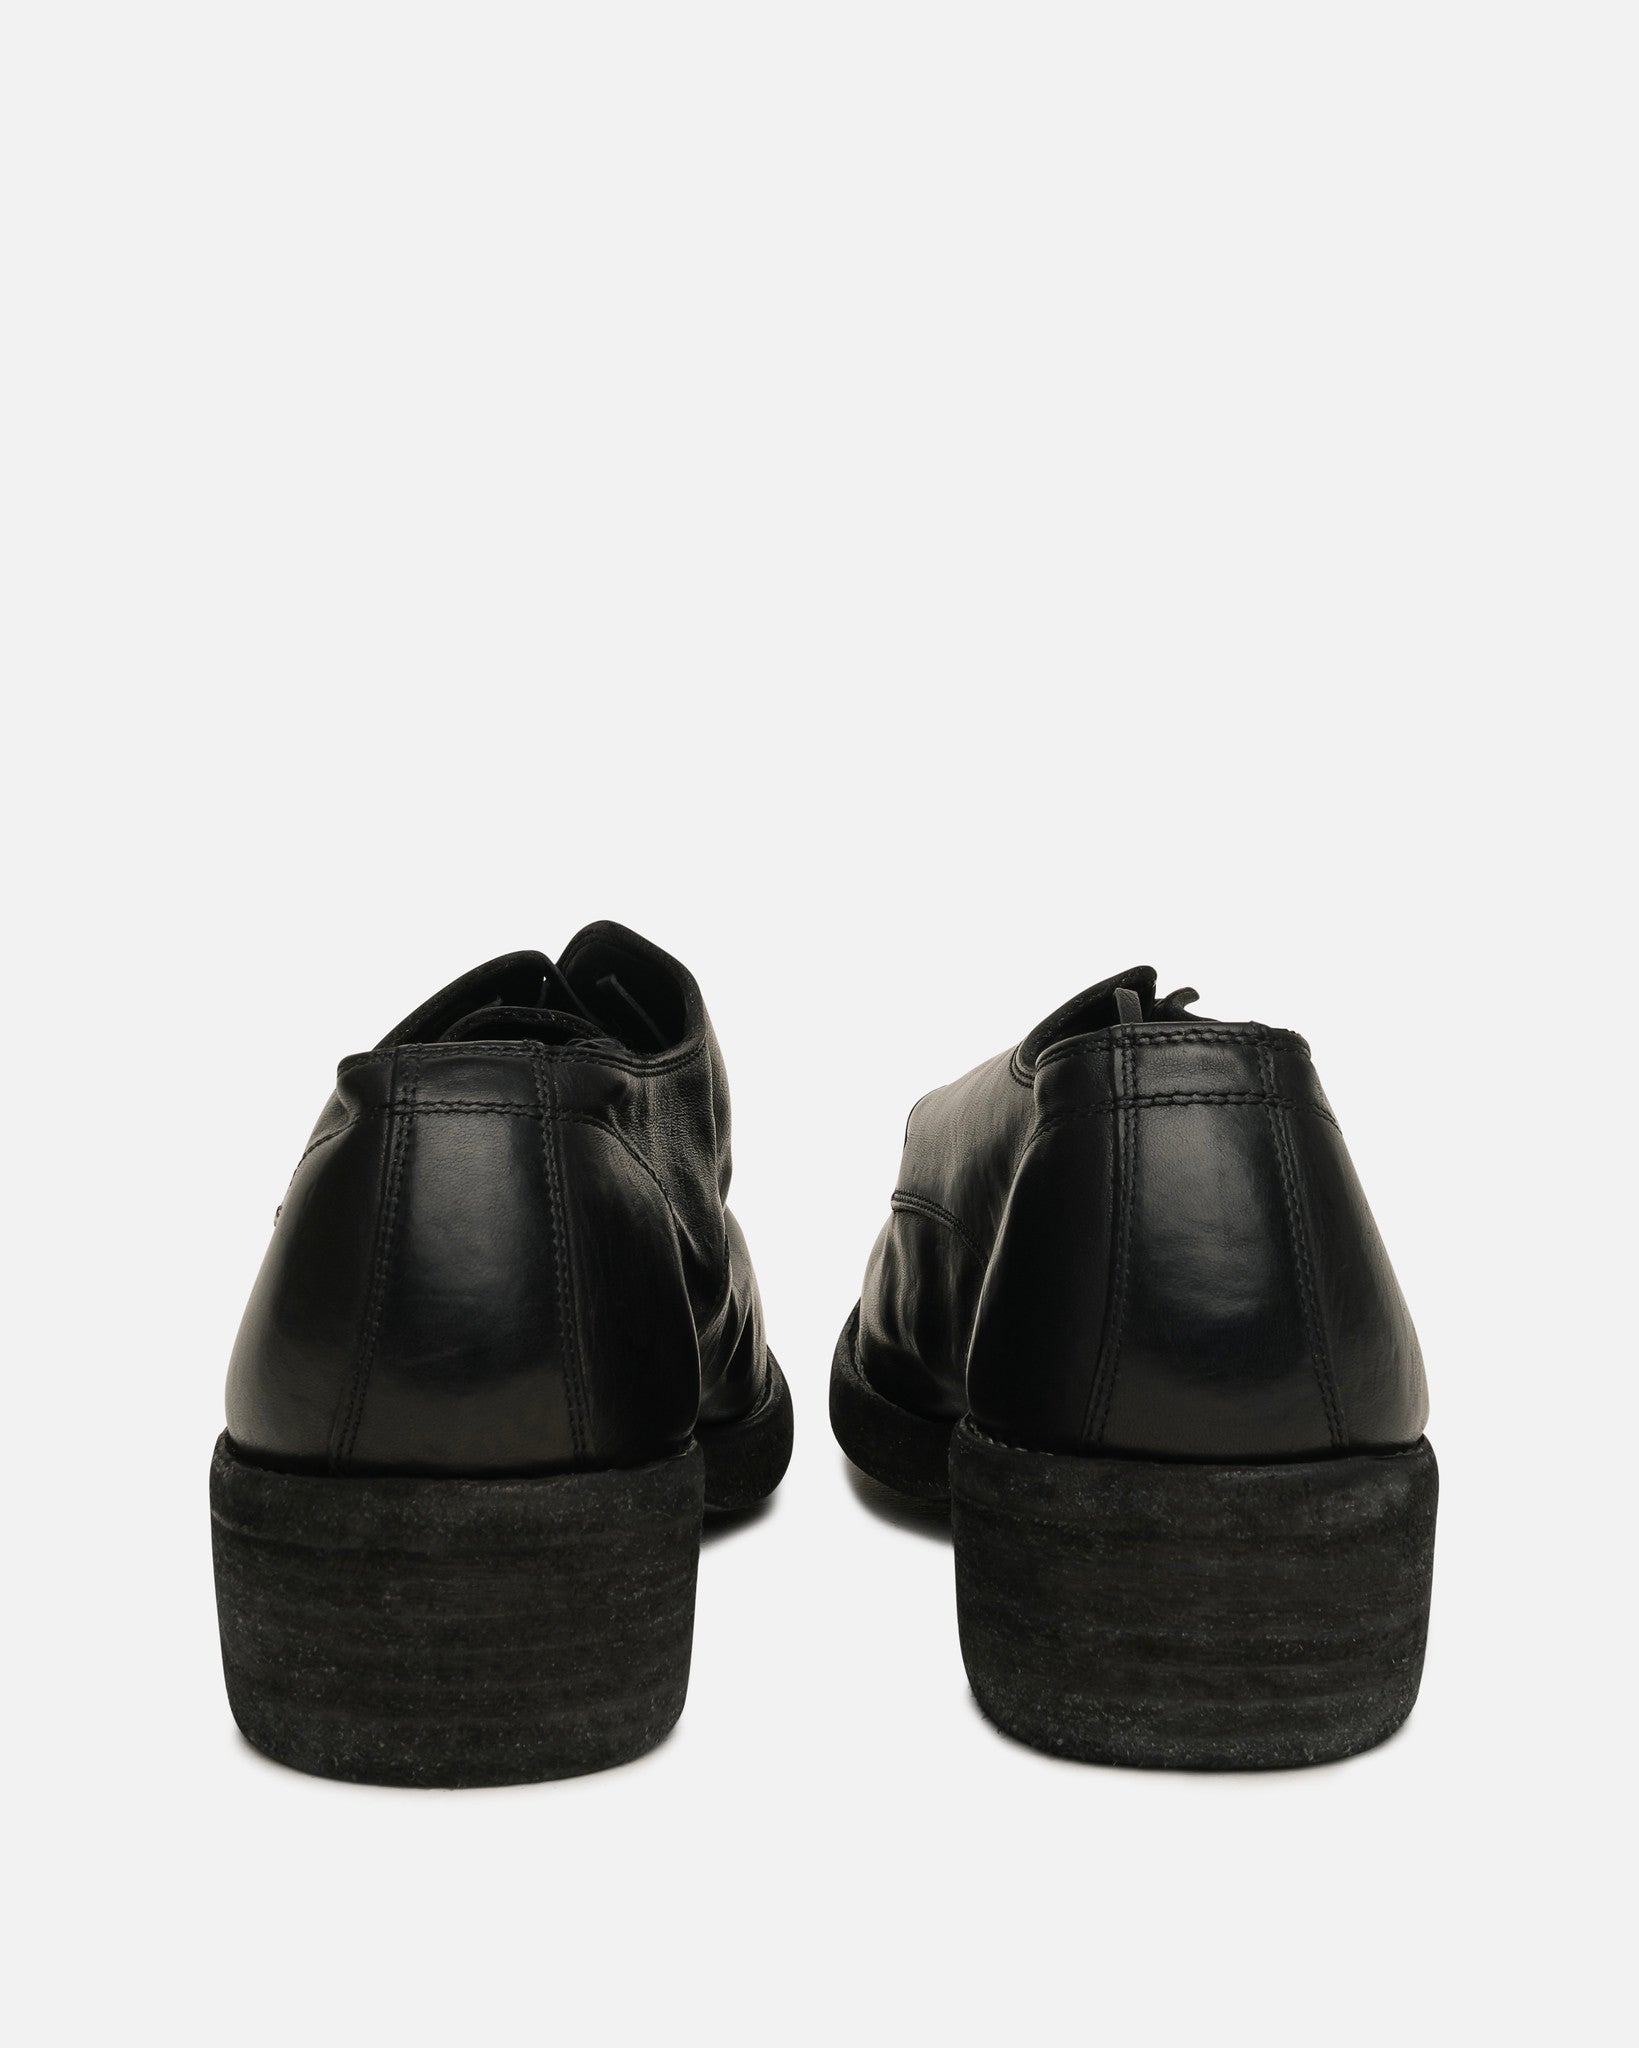 Guidi Men's Shoes 792Z Full Grain Derby in Black